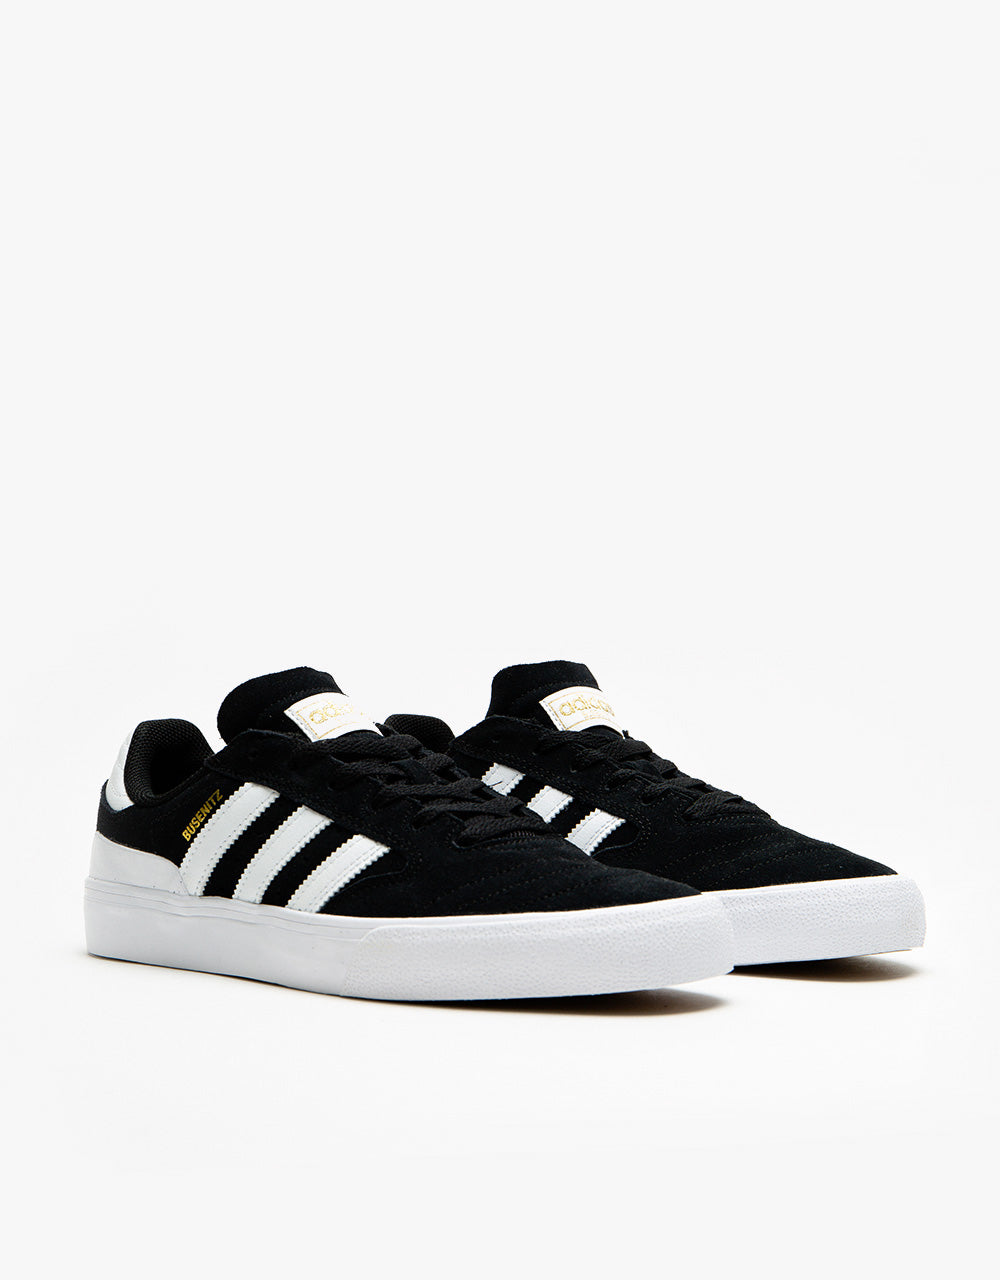 adidas Busenitz Vulc II Skate Shoes - Black/White/Gum